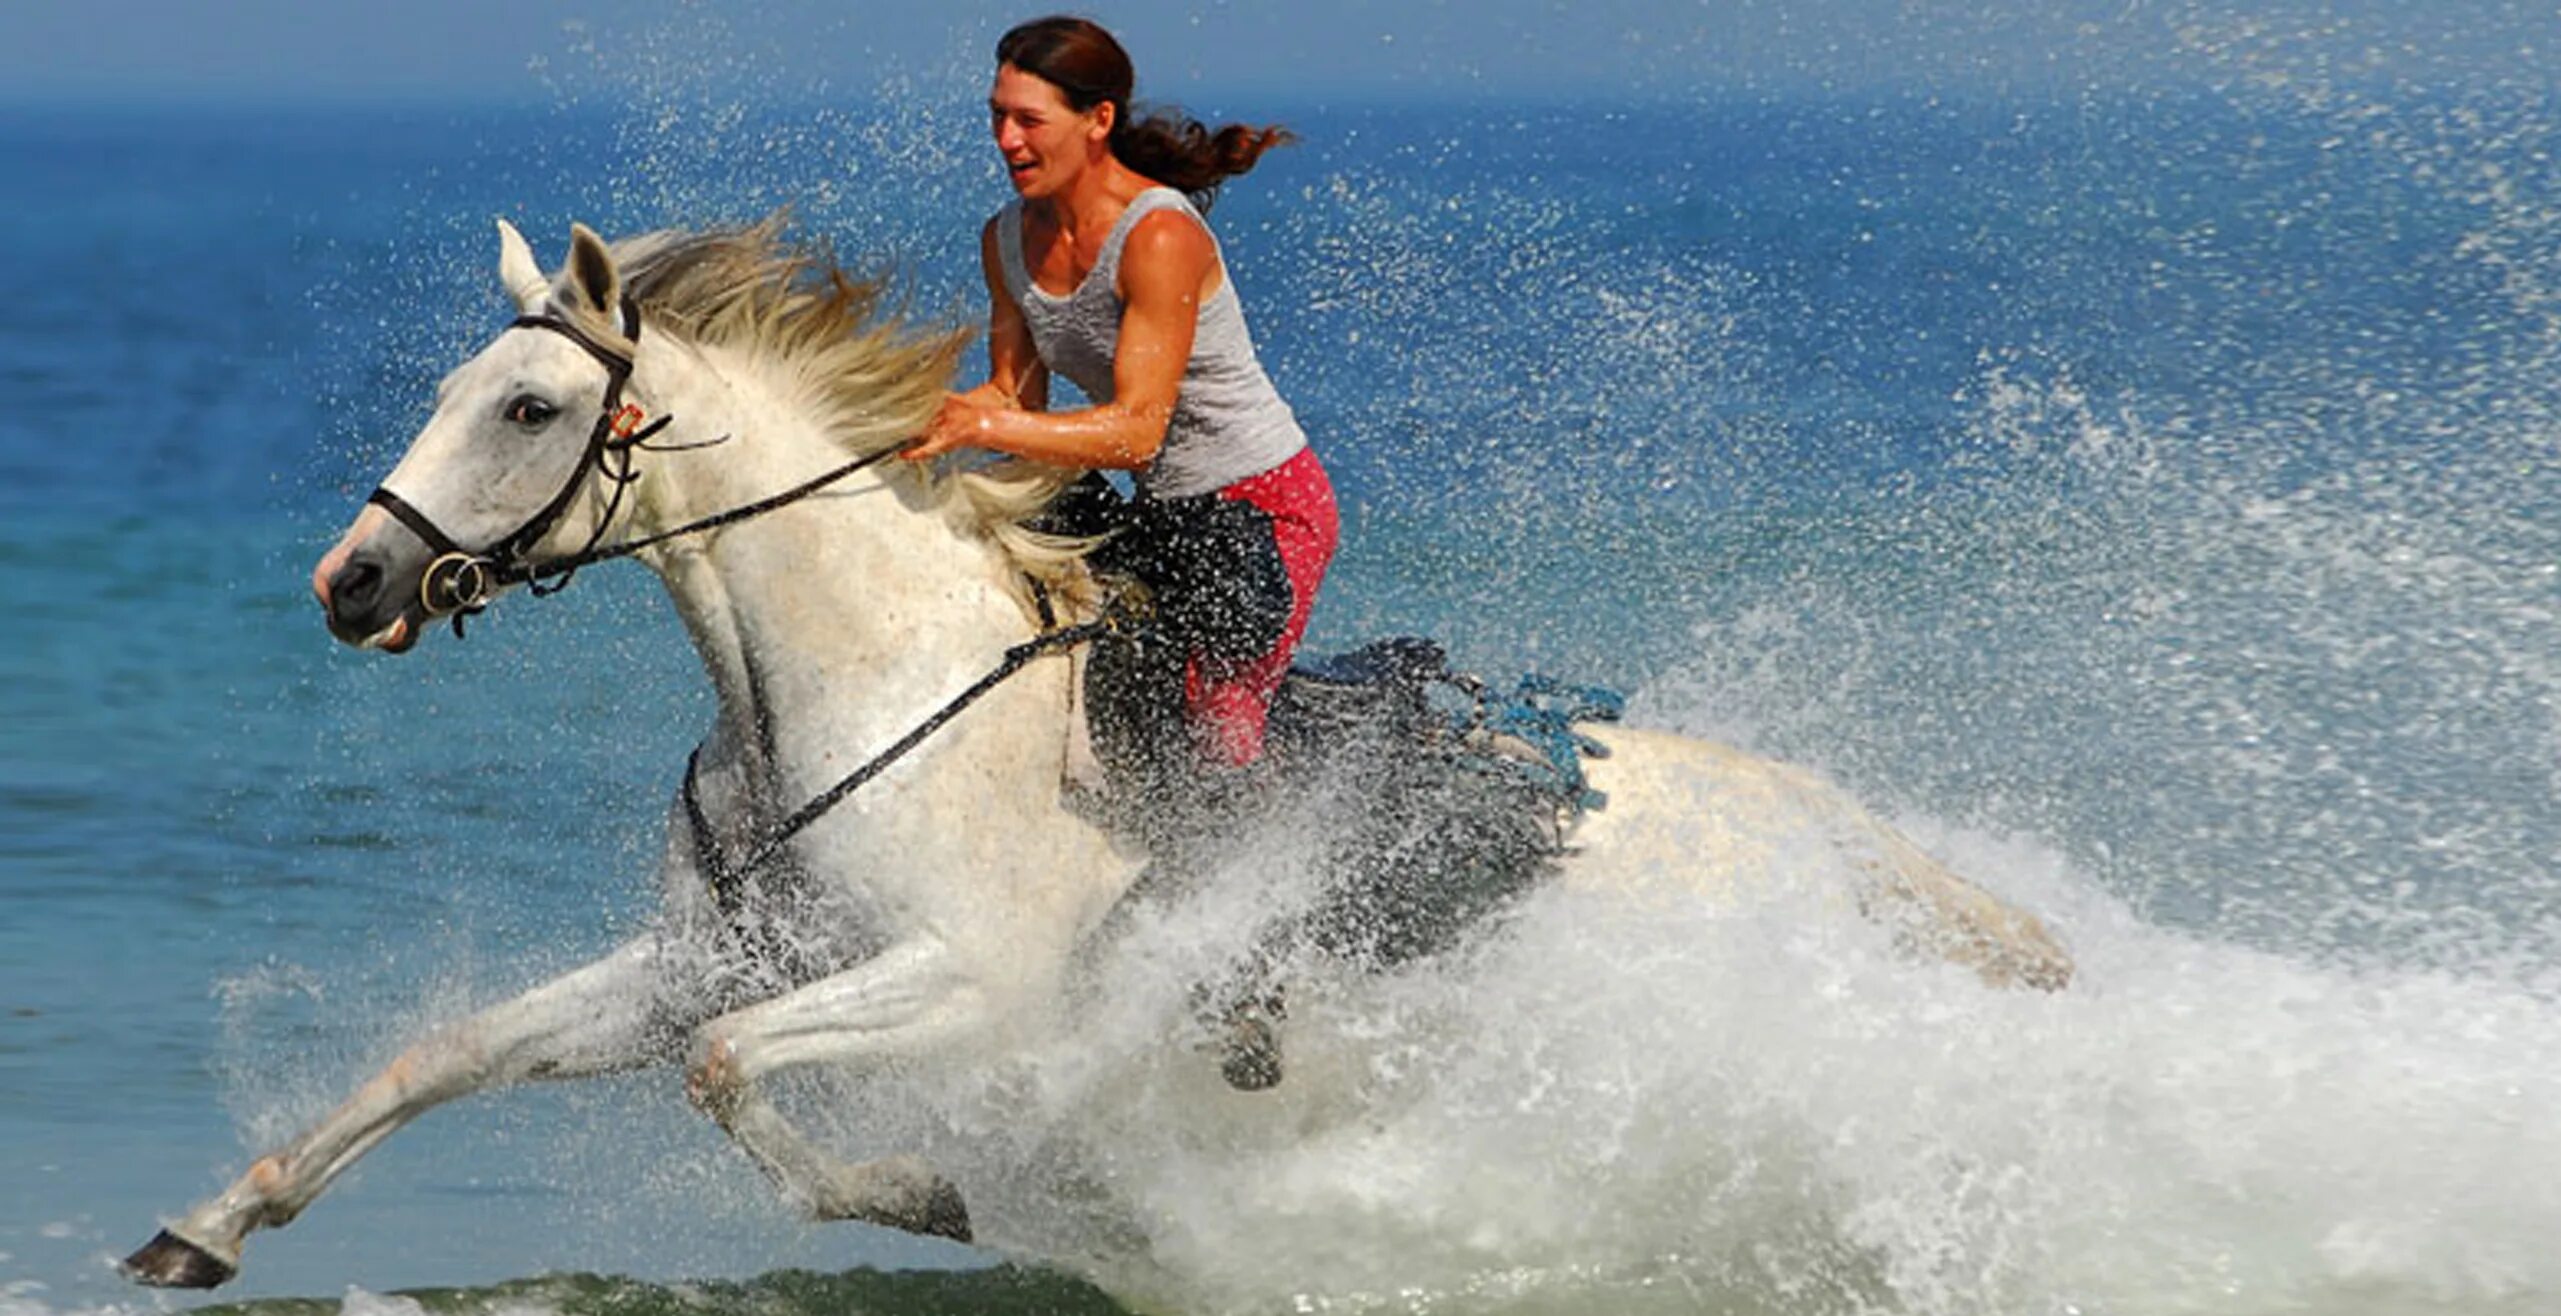 Фотосессия с лошадью на море. Девушка на лошади по берегу. Девушка на лошади вдоль моря. Девушка скачет на лошади по берегу.